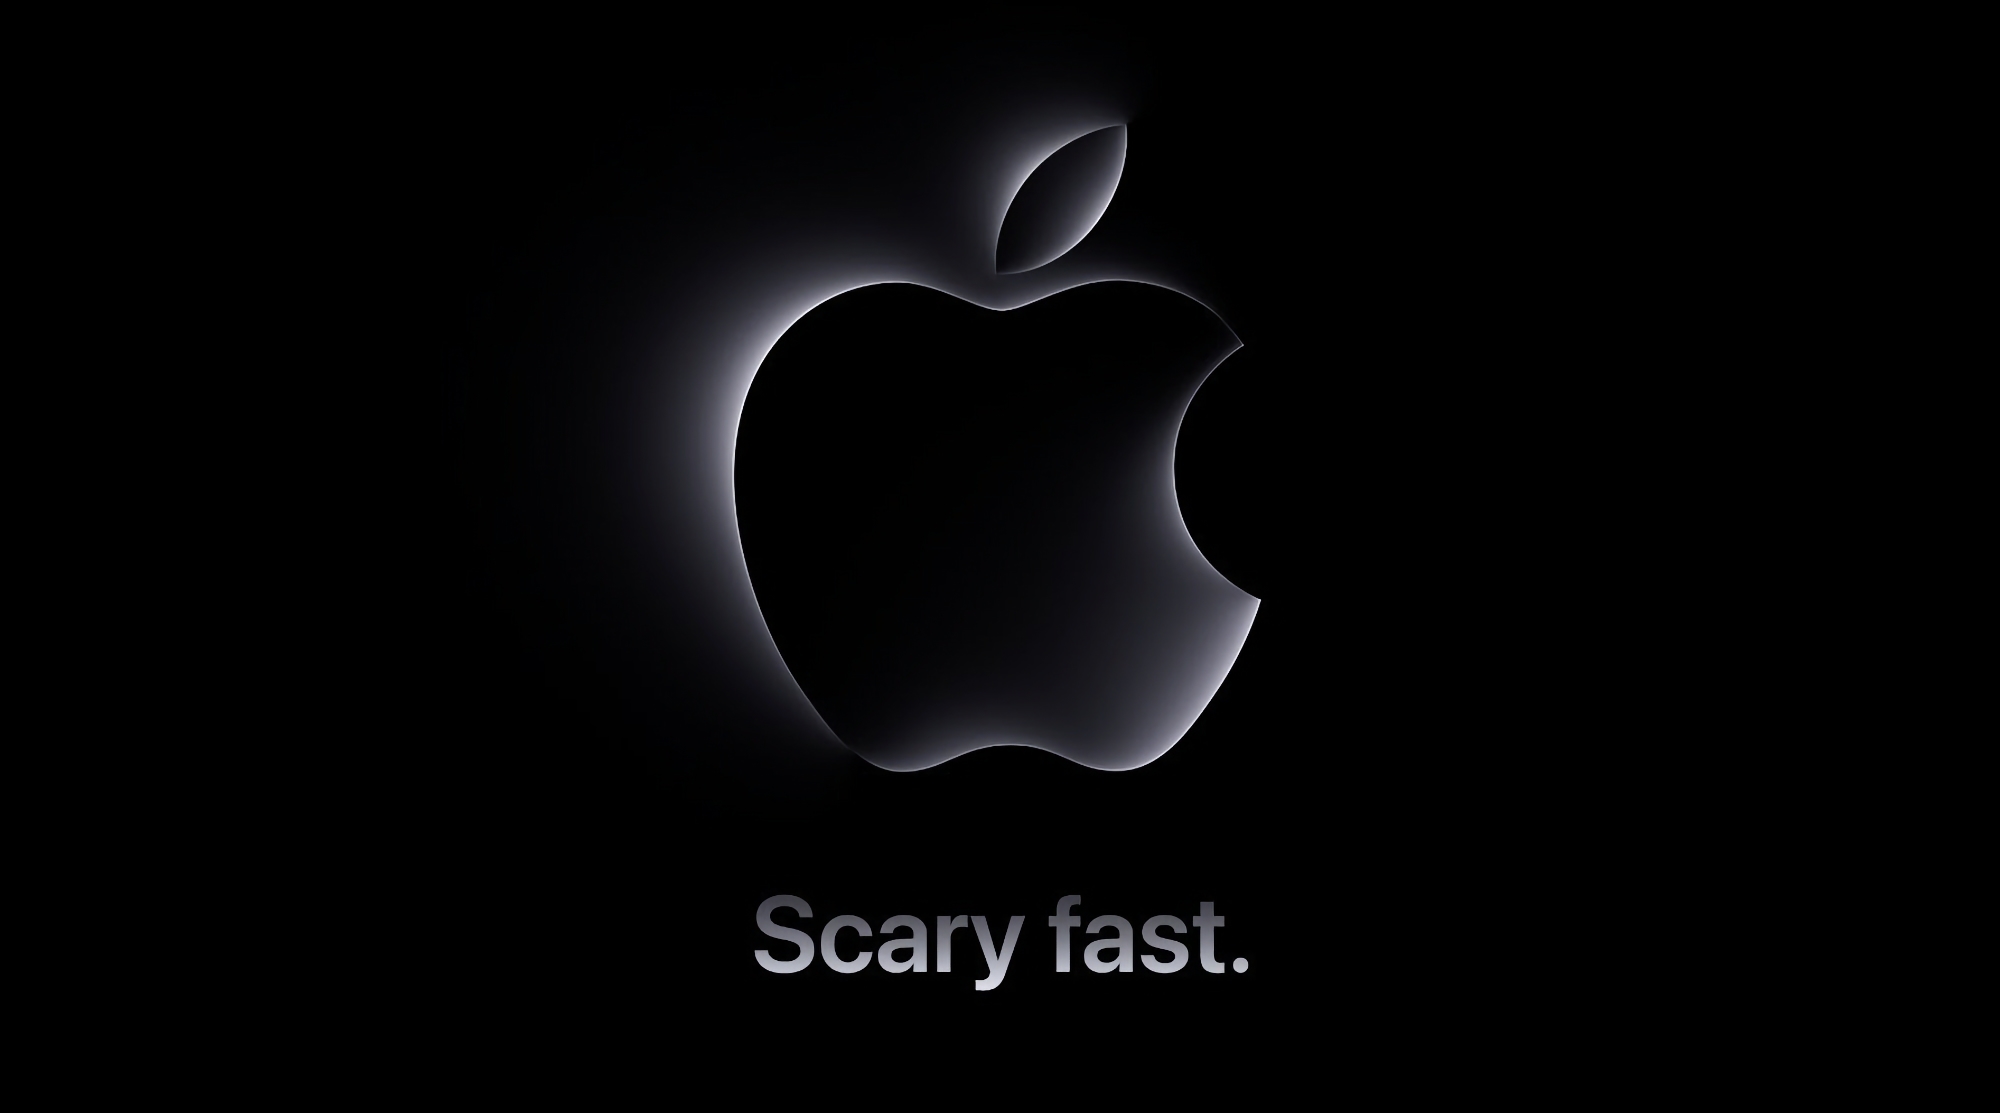 Apple kunngjorde Scary Fast-presentasjon og ventet på utgivelsen av nye Mac-maskiner med M3-brikke